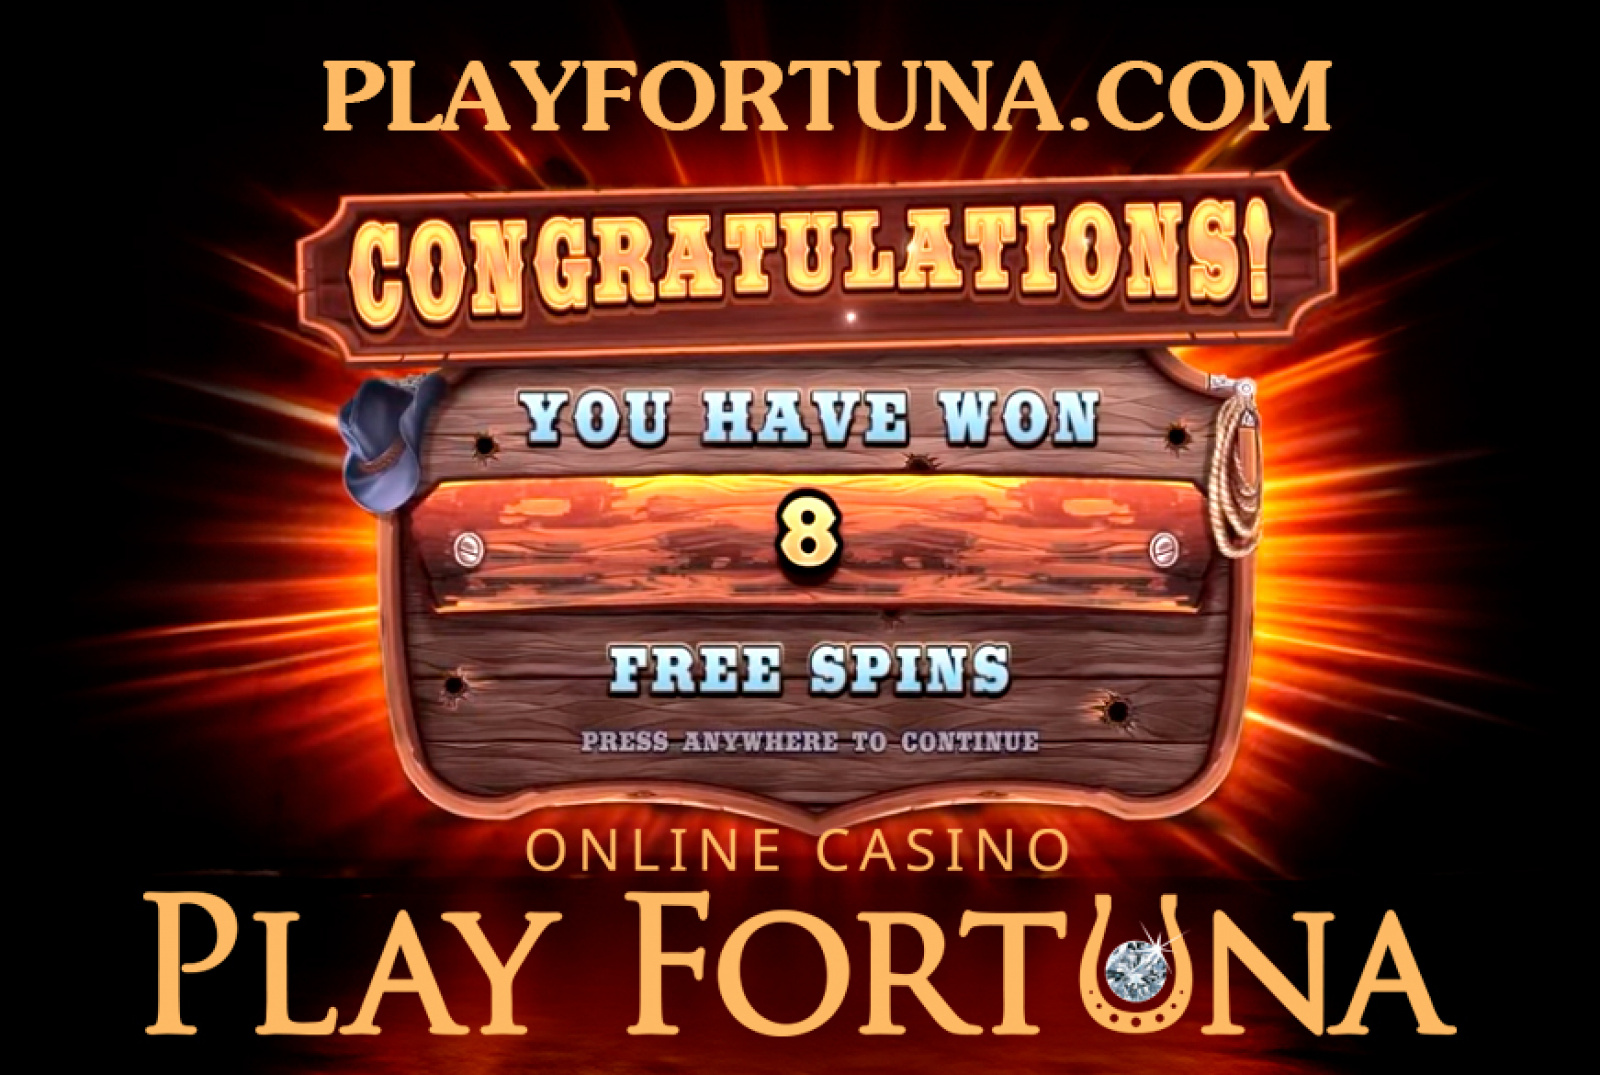 Play fortuna вход в личный кабинет plfort7. Play Fortuna.